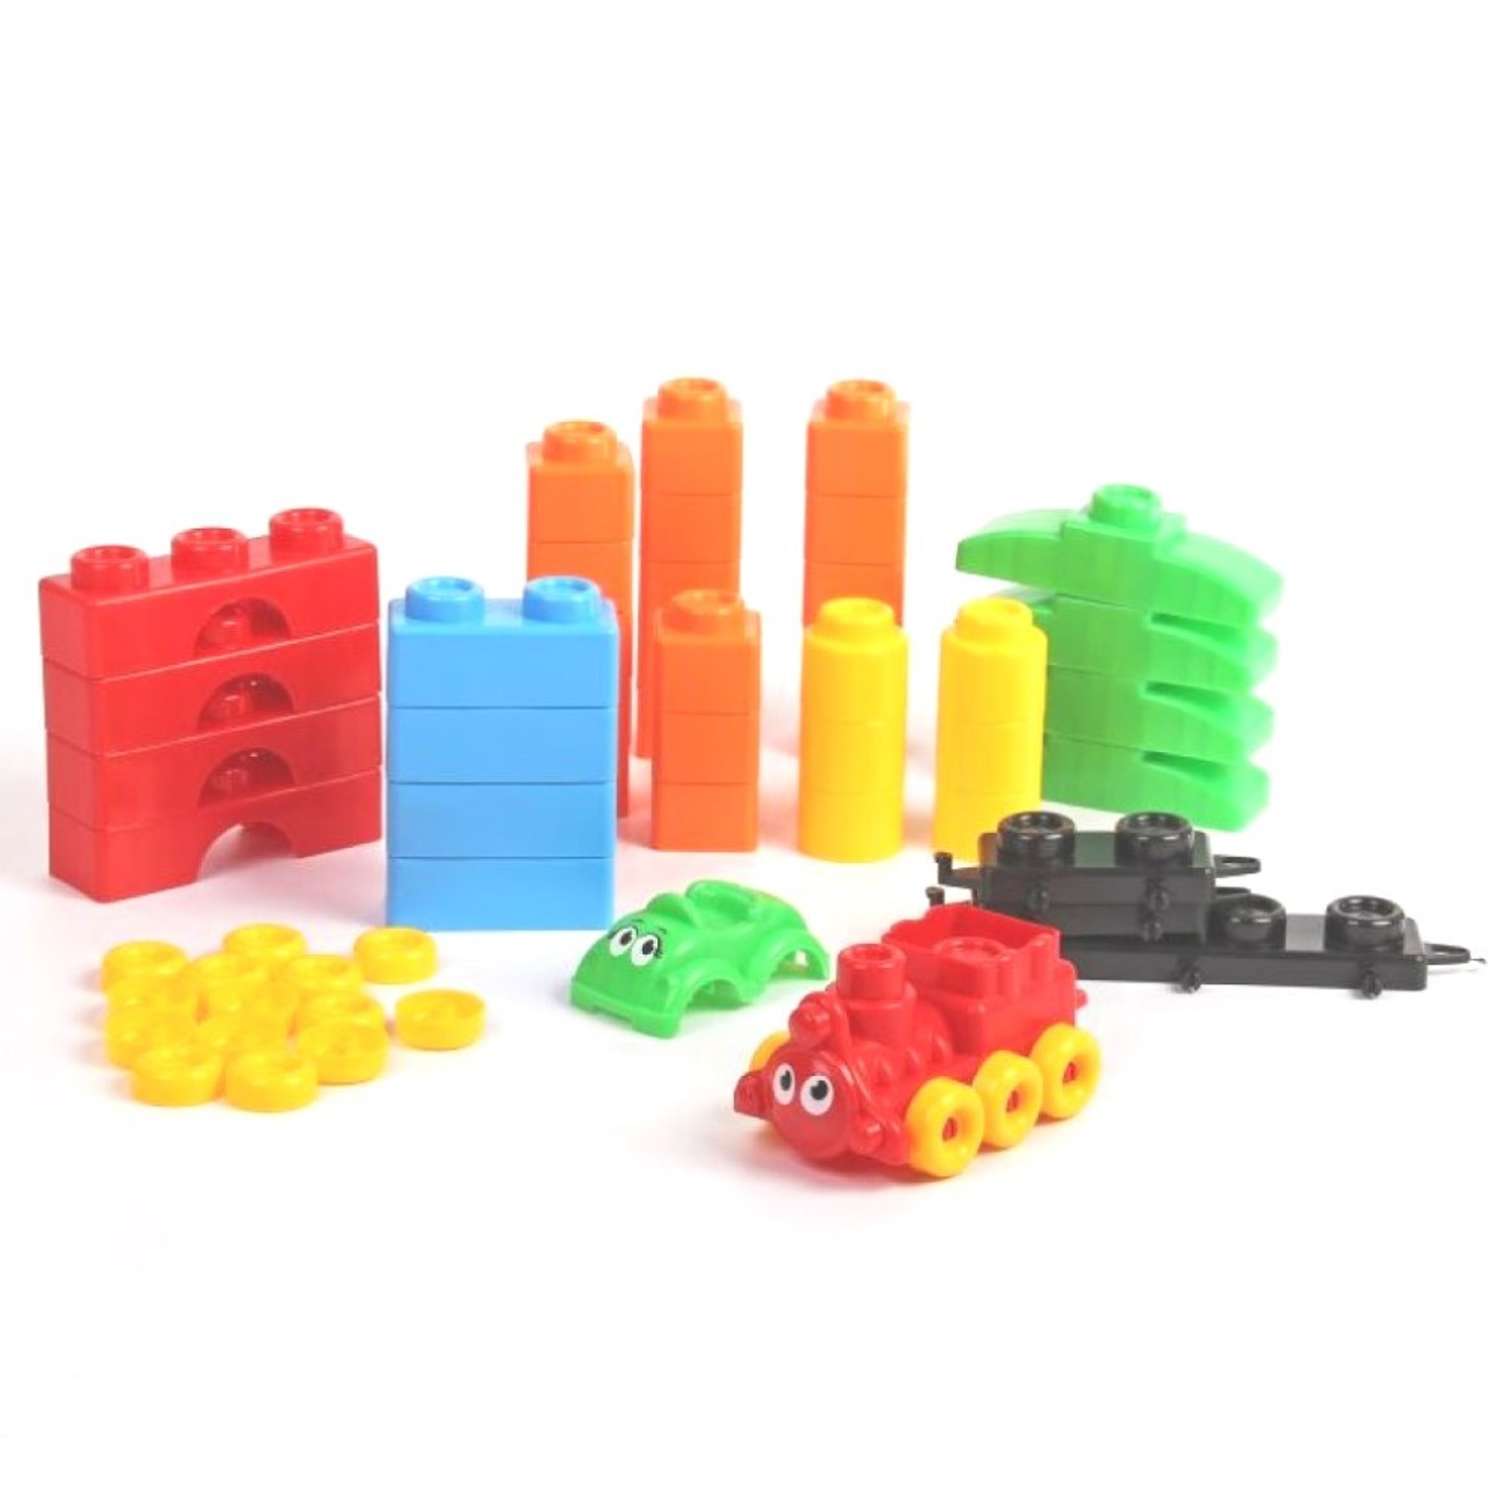 Развивающие игрушки БИПЛАНТ конструктор для малышей Кноп-Кнопыч 114 деталей + Сортер кубик малый + Команда КВА - фото 5